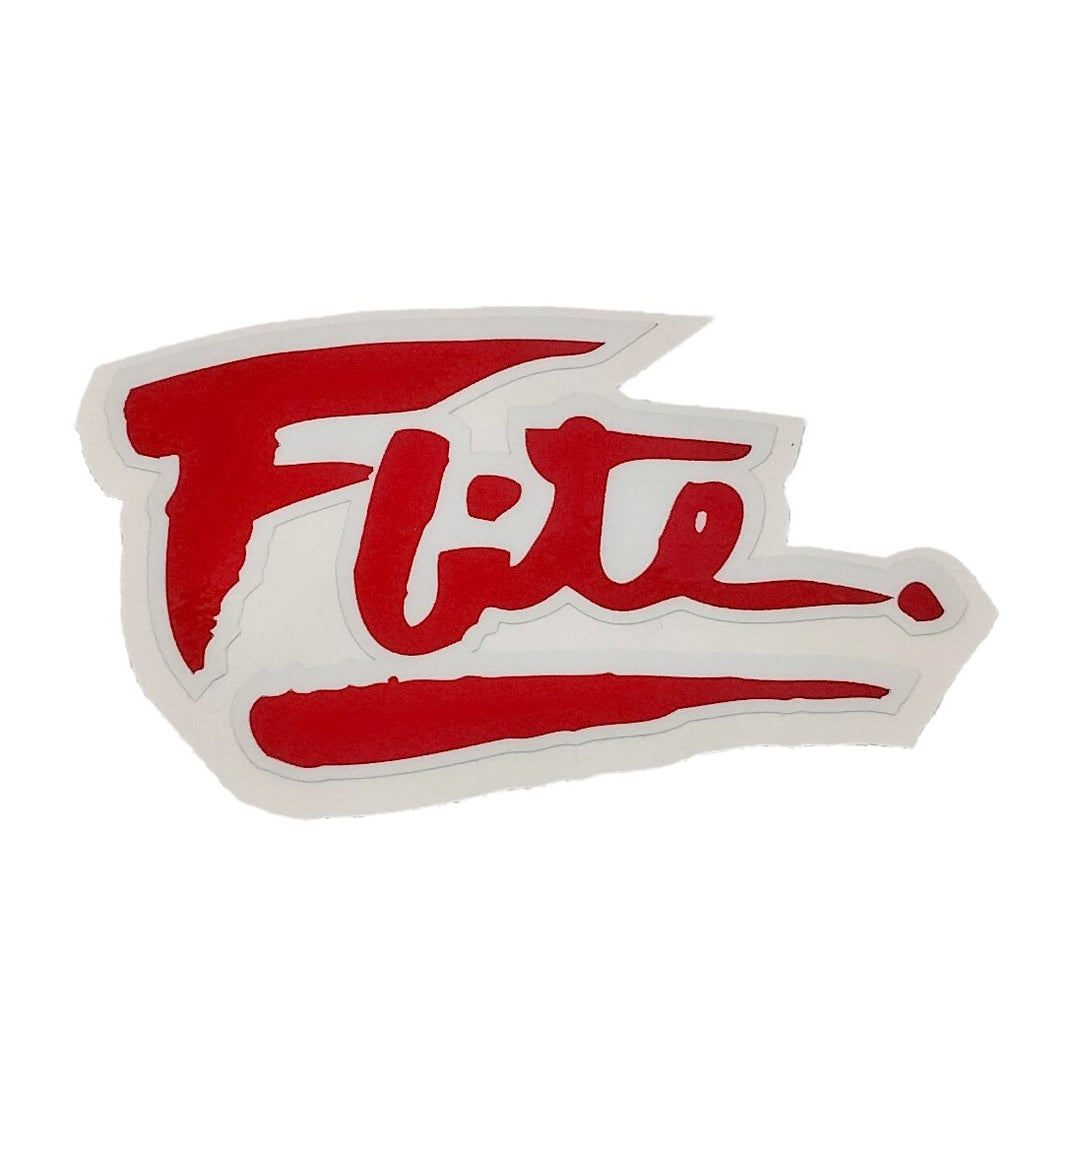 Red Flite 80's logo sticker